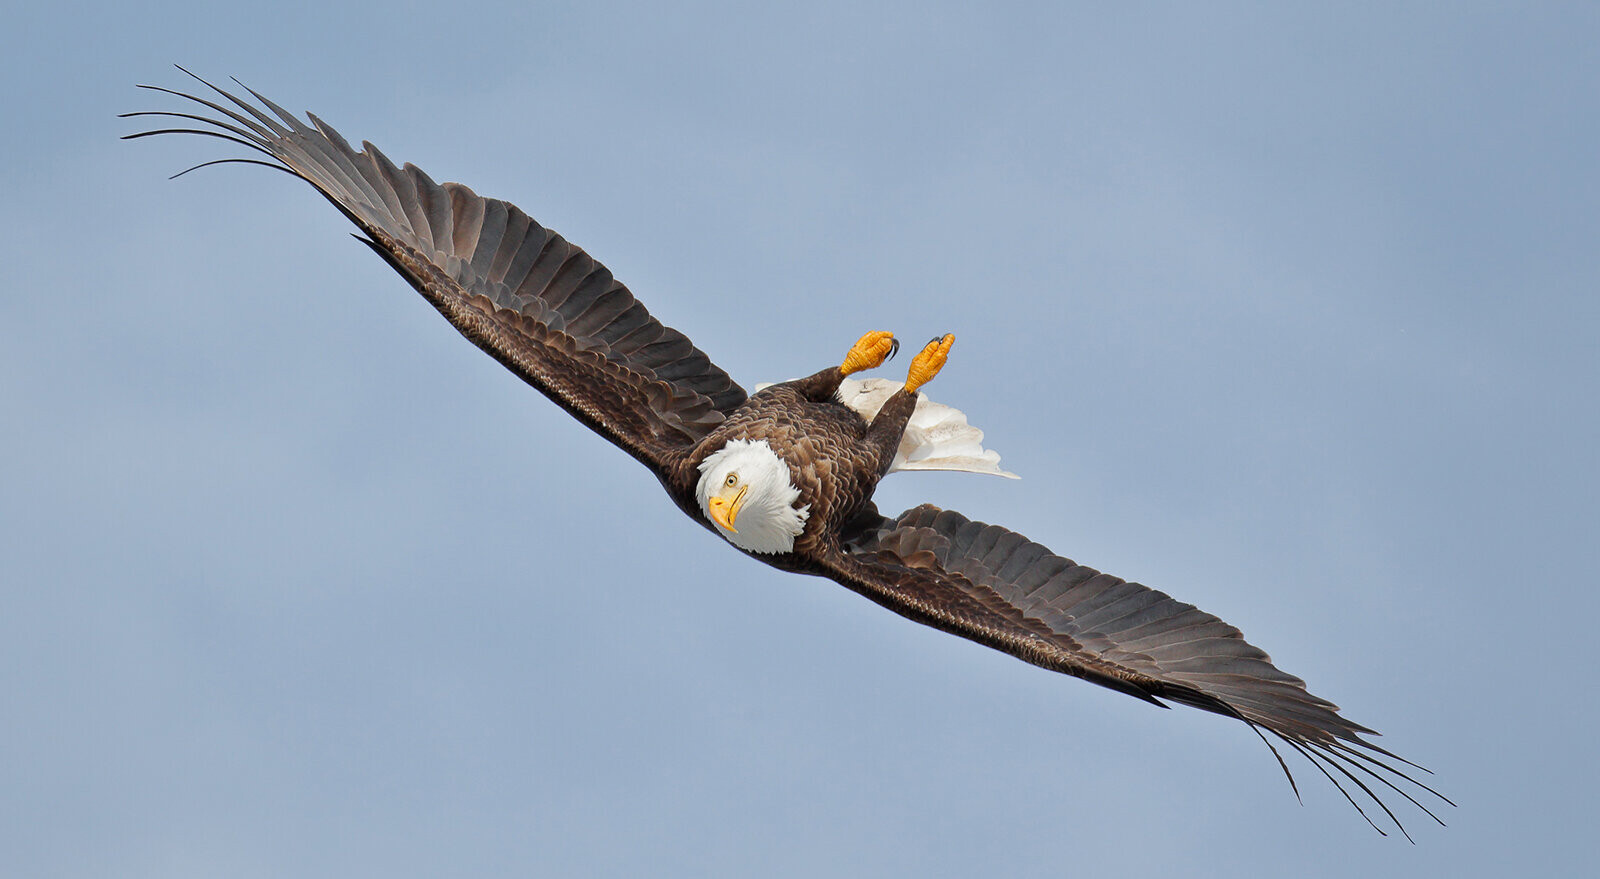 Финалист в категории Птицы в полёте, 2021. Воздушный акробат. Фотограф Гейл Биссон